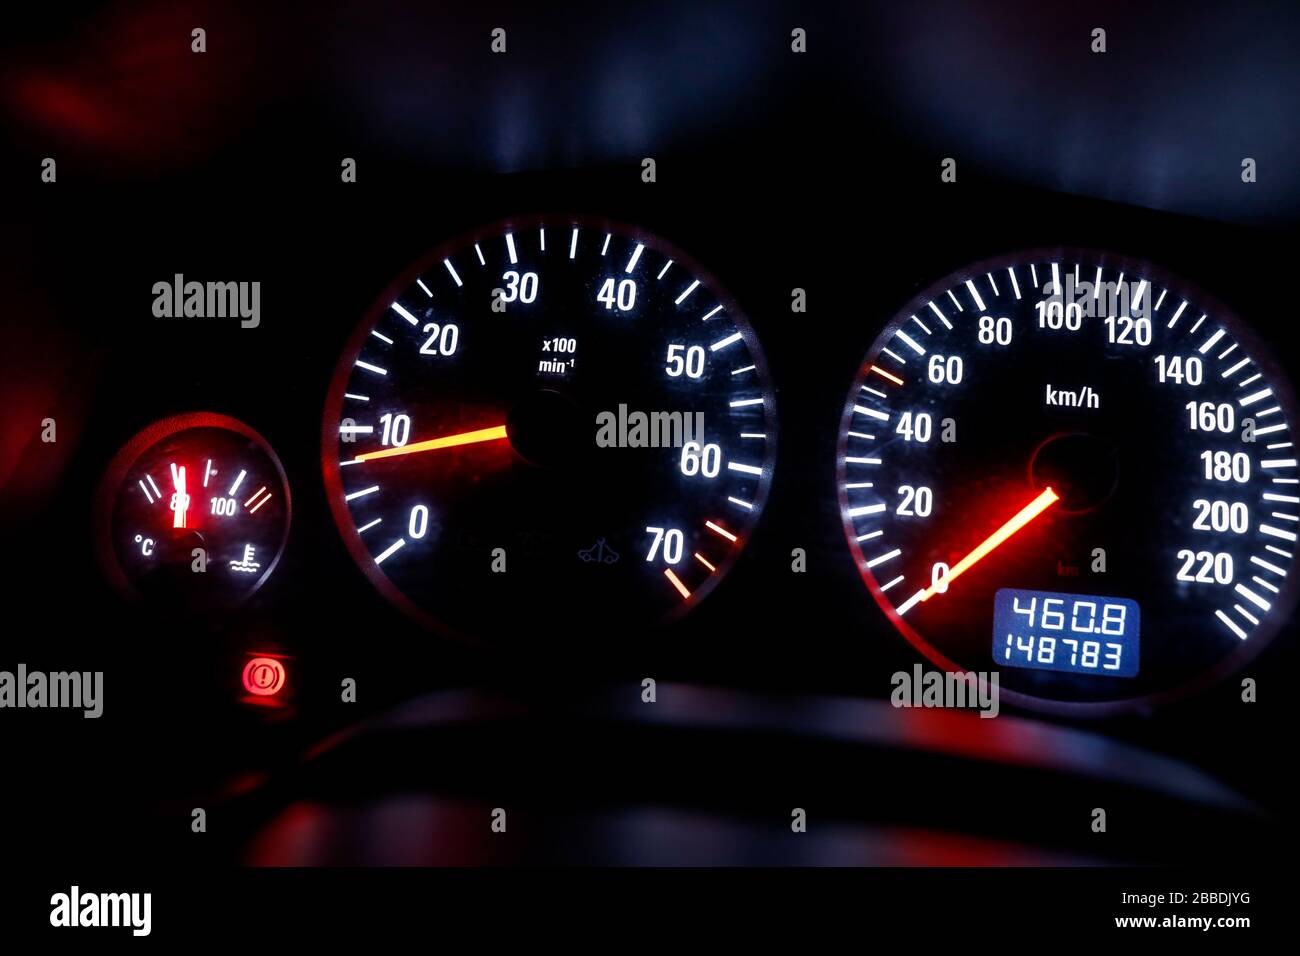 Anzeige anzeigen Armaturen Armaturenbrett Auto Auto-Armaturen Auto-Cockpit  Autofahren beleuchtet Gas-Anzeige Cockpit Composing Detail Tachometer  Stockfotografie - Alamy